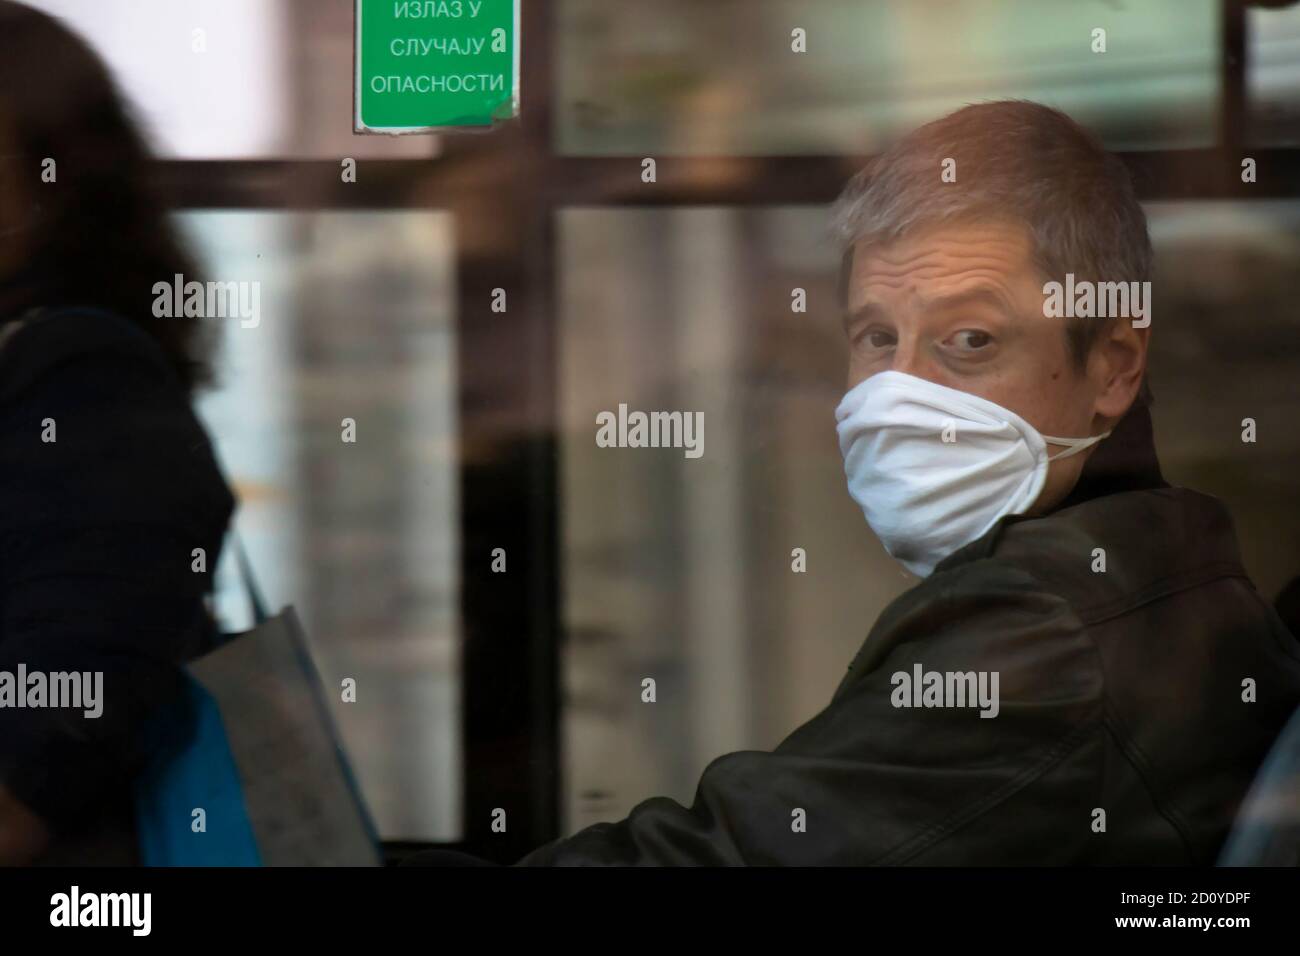 Belgrade, Serbie - 02 octobre 2020 : homme mature portant un masque facial en montant sur un siège de fenêtre dans un bus, à travers la fenêtre Banque D'Images